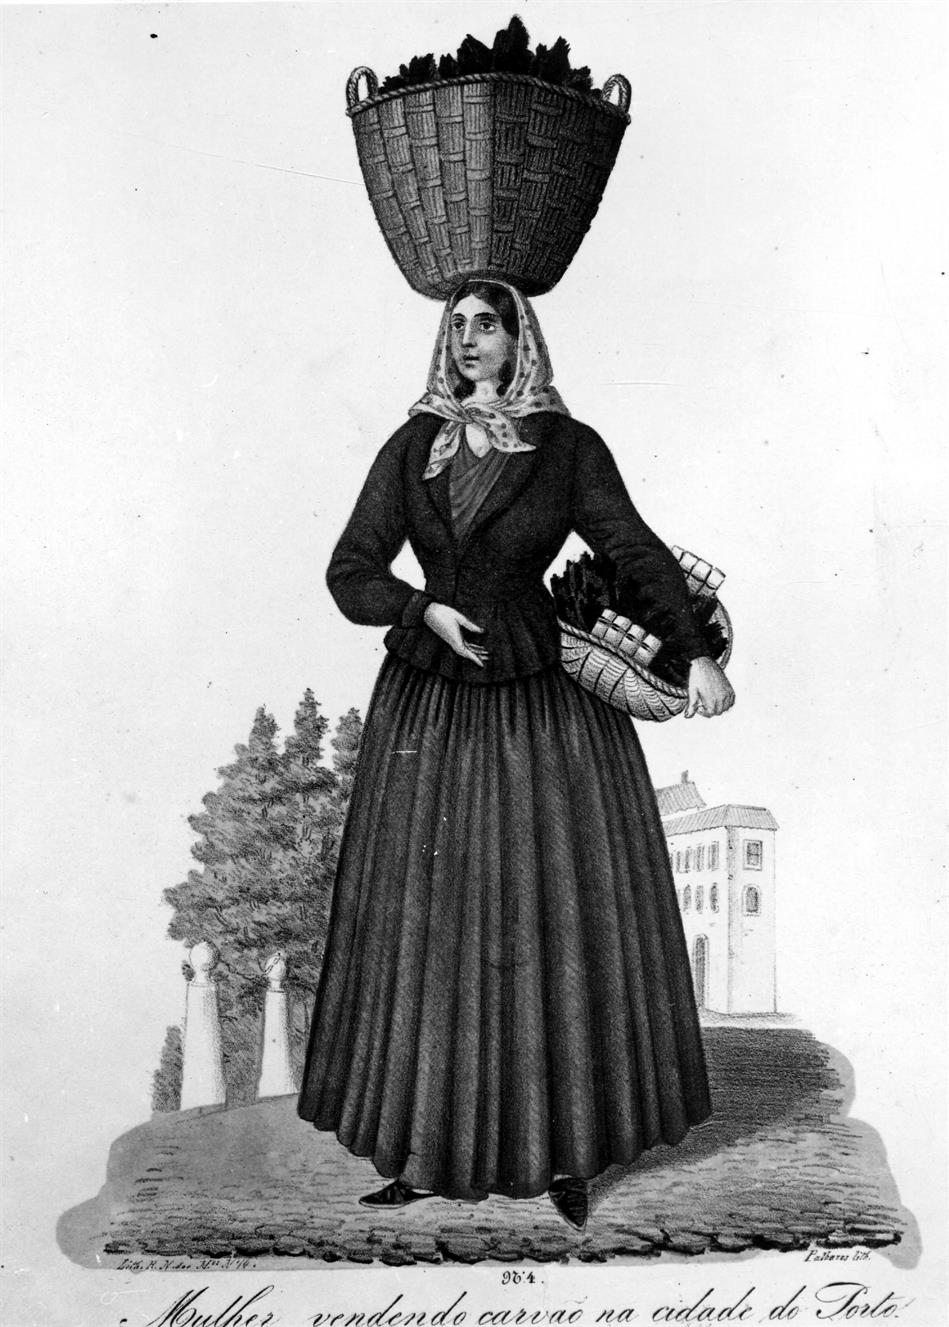 O traje popular tradicional no distrito do Porto : mulher vendendo carvão na cidade do Porto : 1860